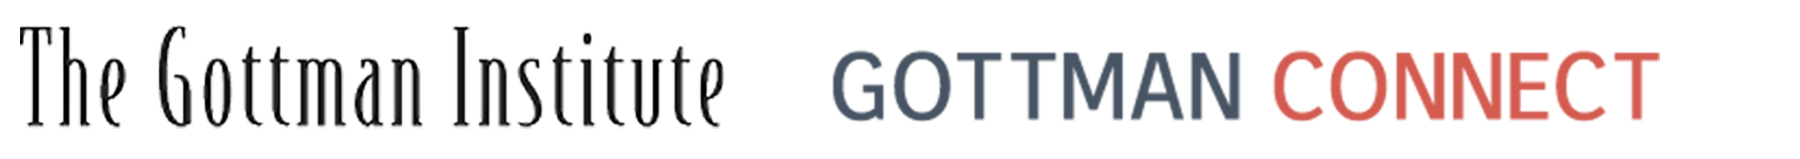 TGI-GC-logos v2